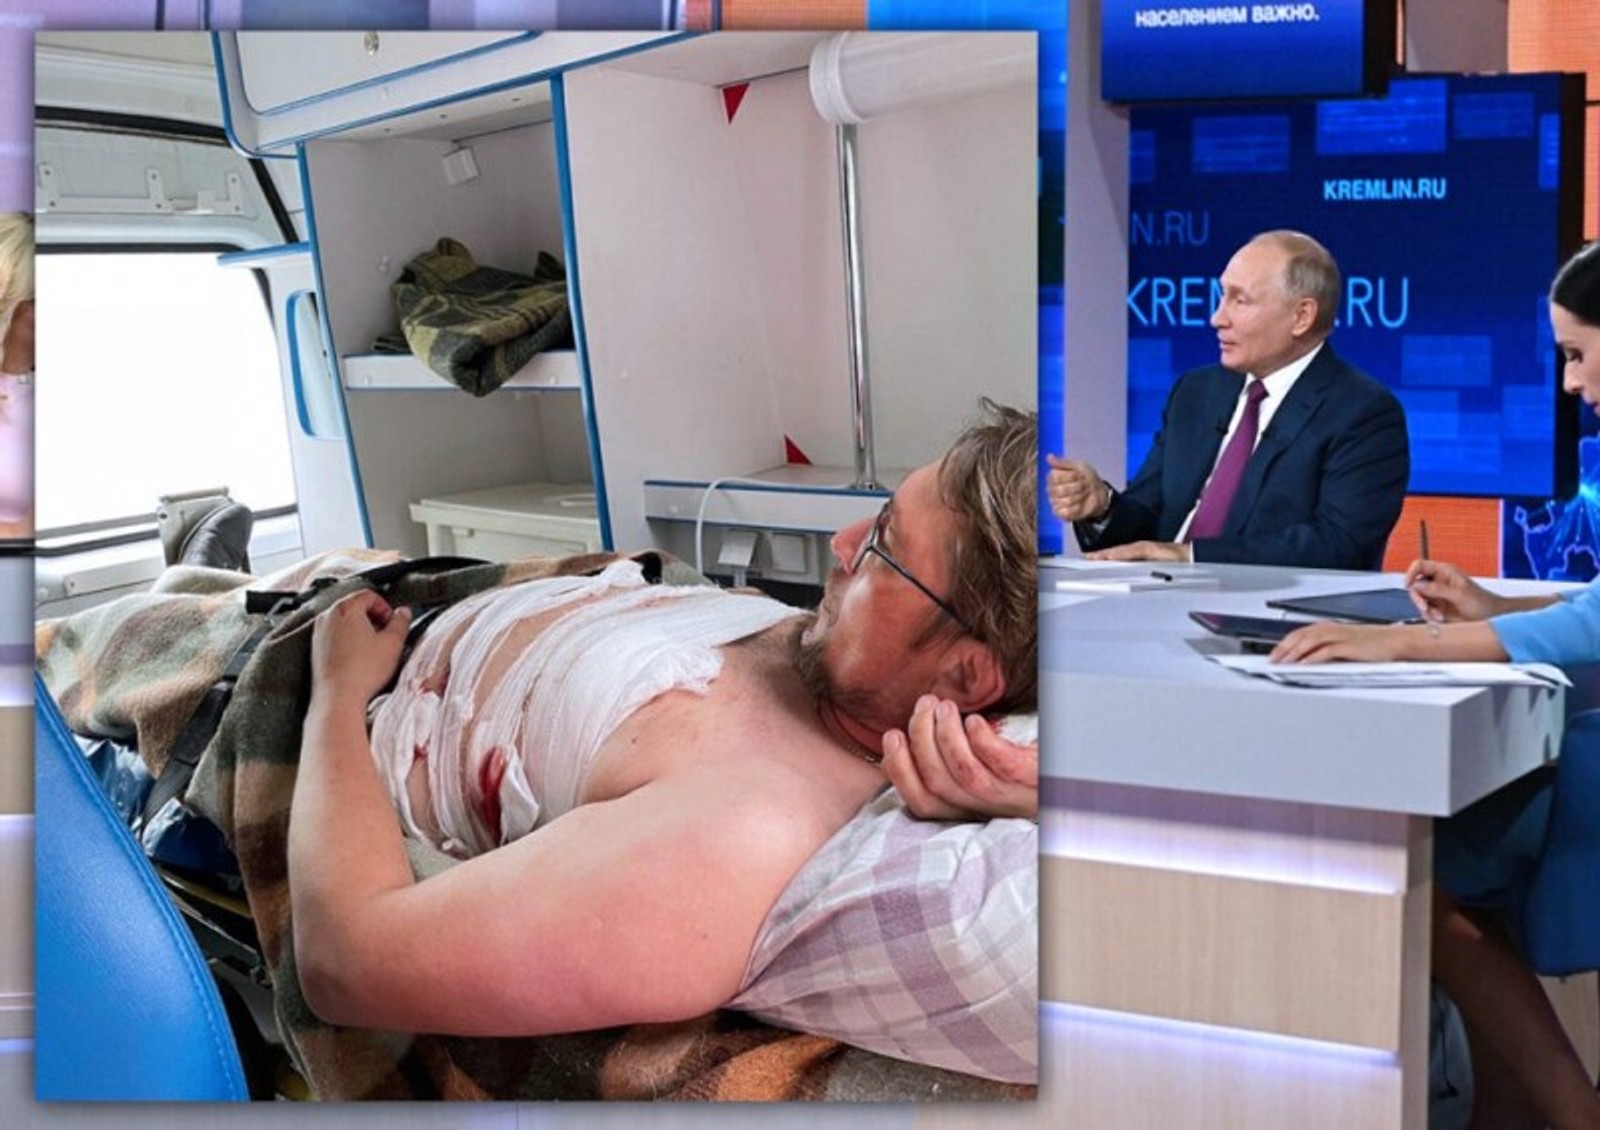 Кремль перевірить ситуацію з тамбовський екоактивісти Герасимовим, на якого напали з ножем після скарги на полігон під час ефіру Путіна